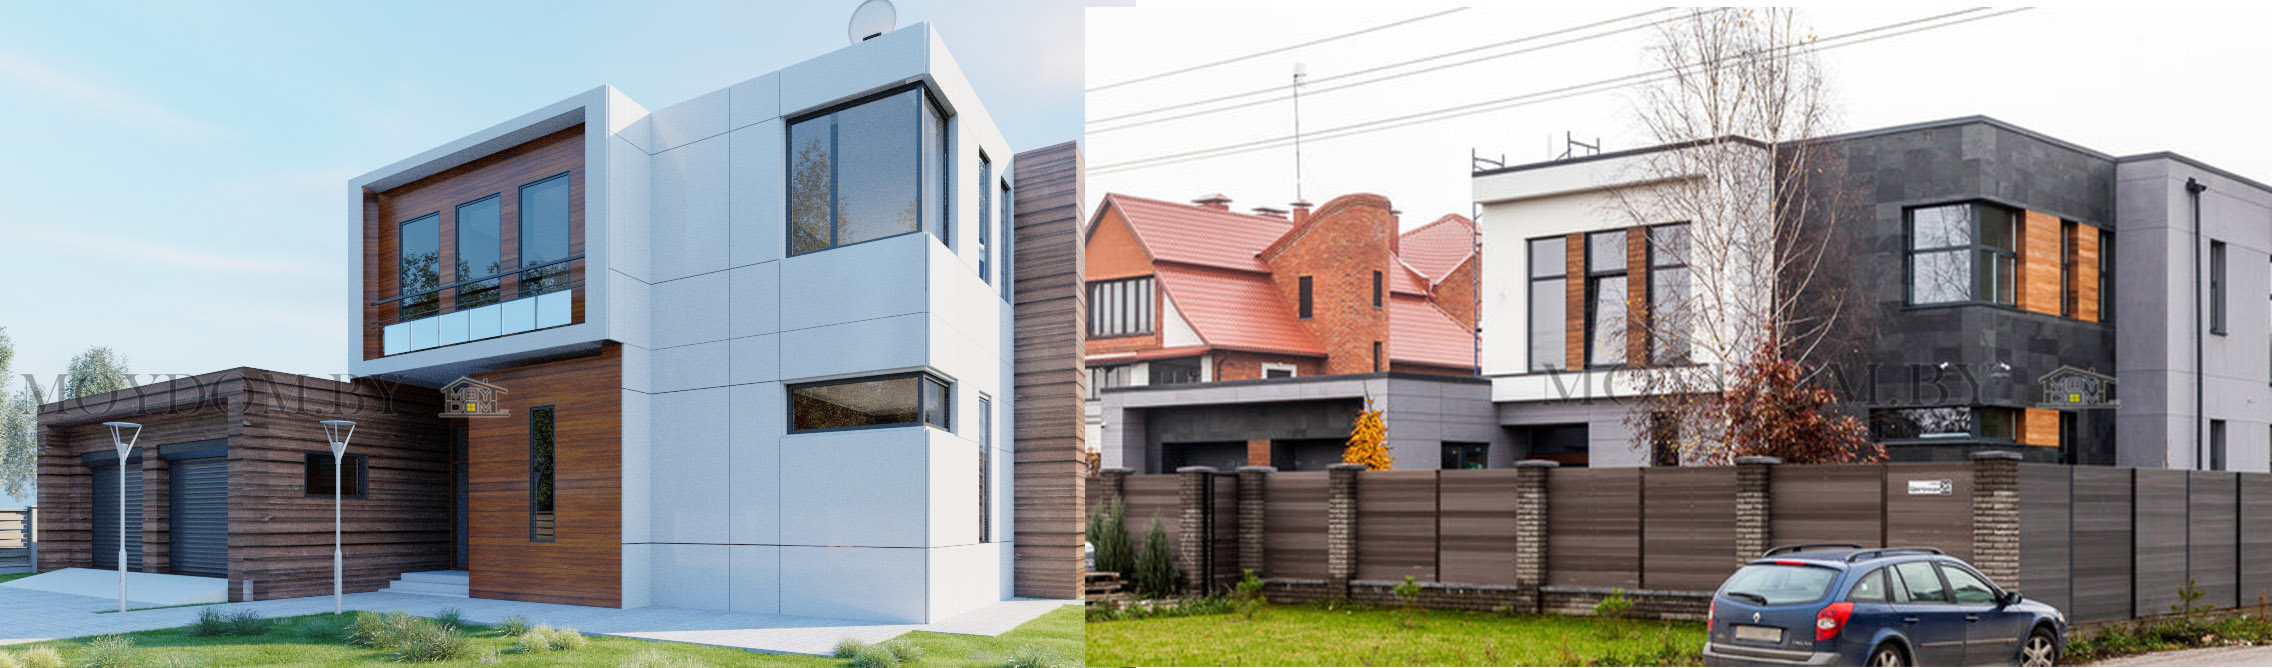 Проект и снимок построенного двухэтажного дома в стиле хай-тек с панорамными окнами